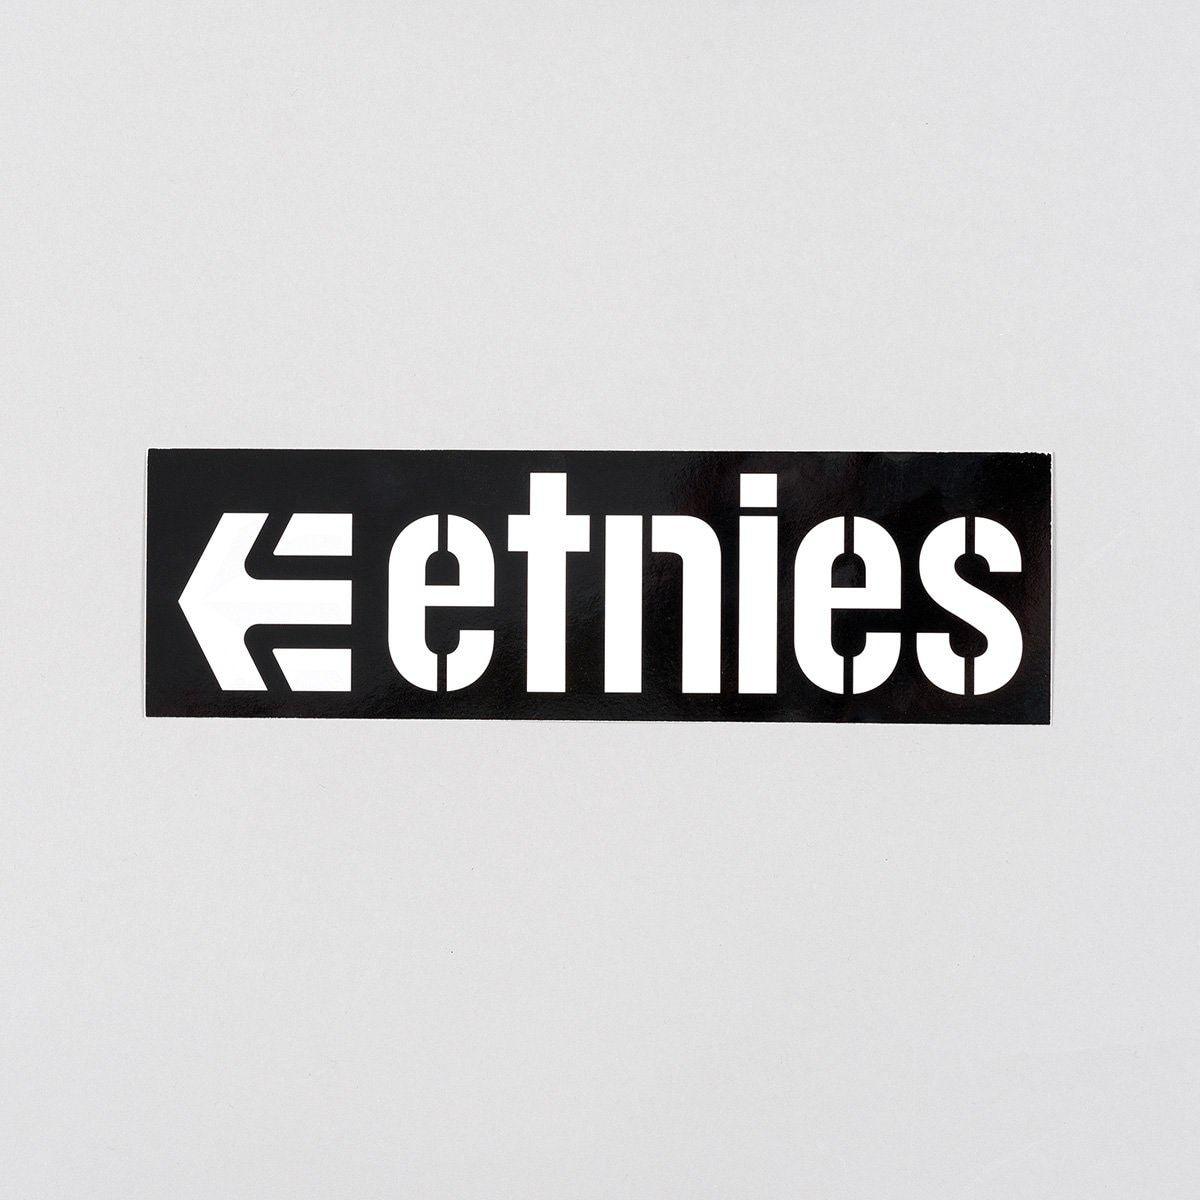 Black and White Rectangle Brand Logo - Etnies Logo 2 Sticker Black/White 200mm x 60mm - rollersnakes.co.uk ...